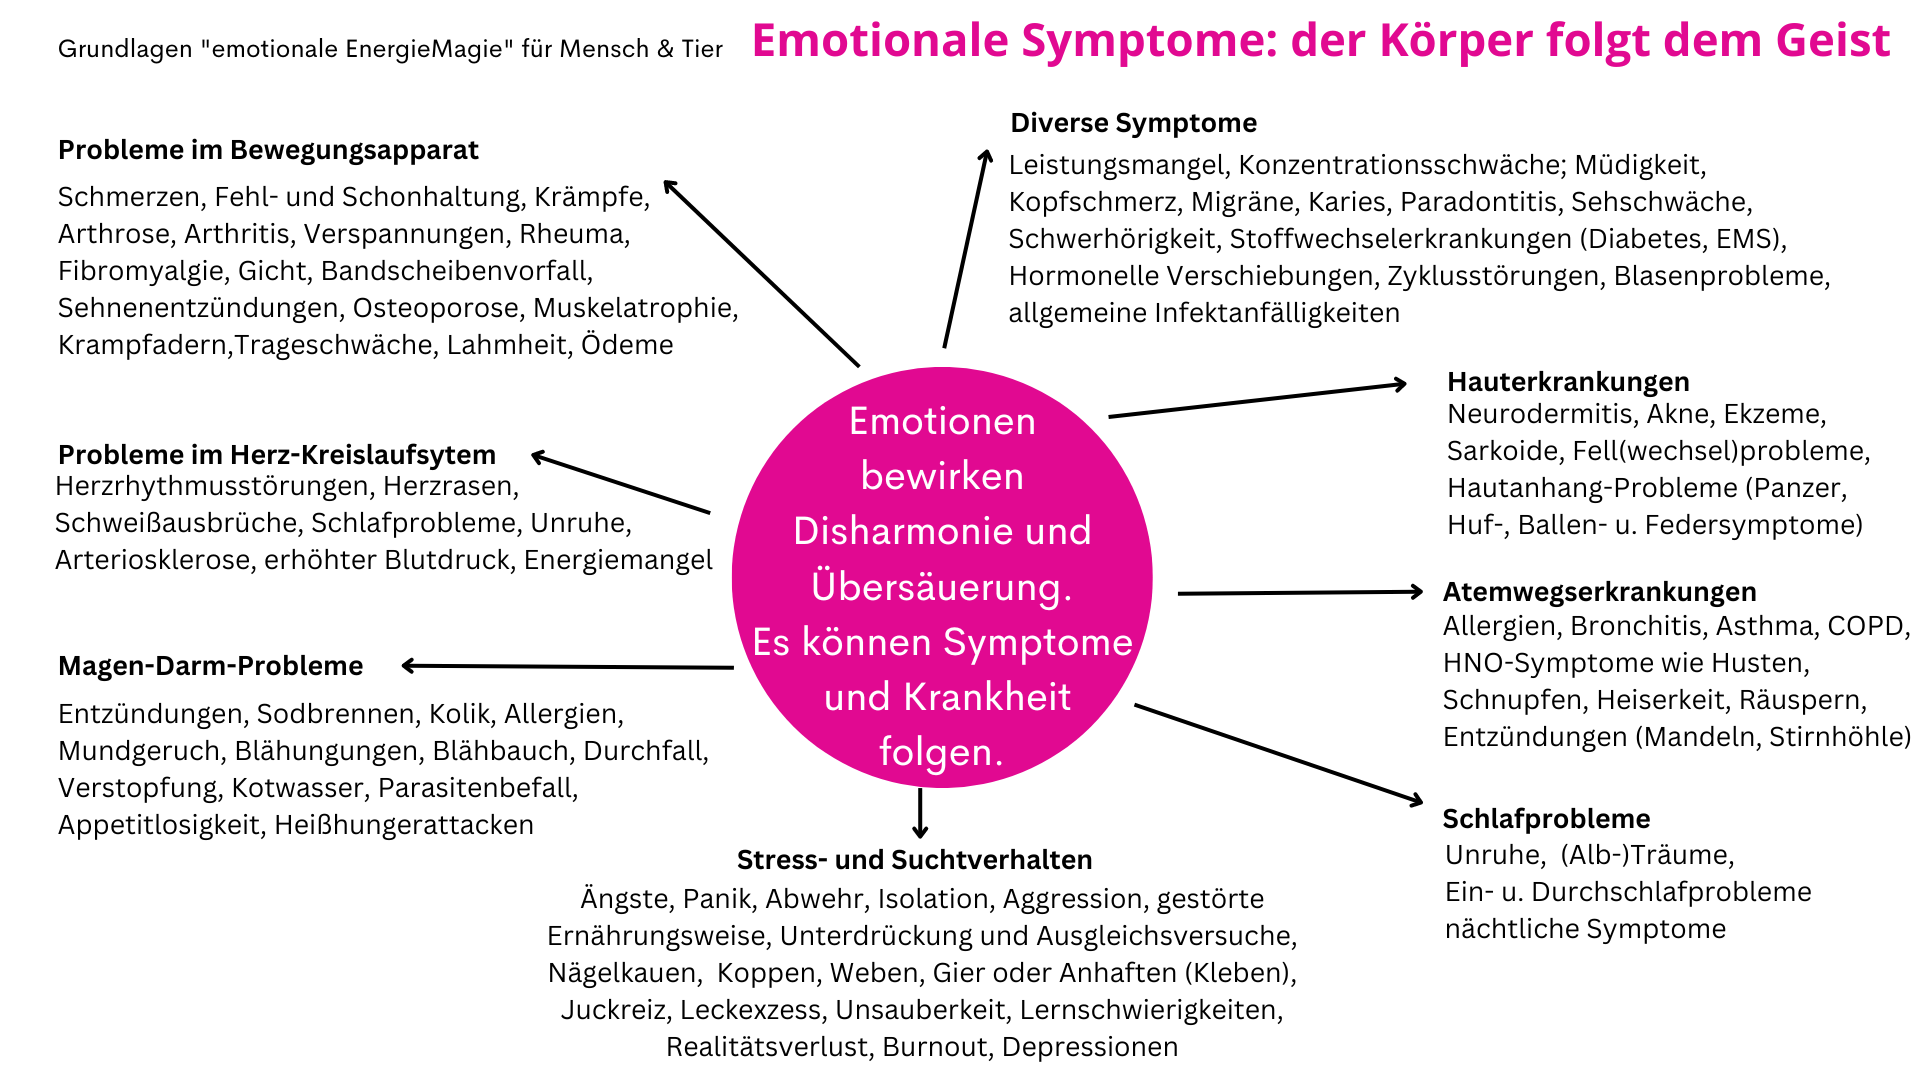 die vielen emotionalen Symptome zeigen die Wesensgleichheit von Mensch und Tier und von Stressreaktionen